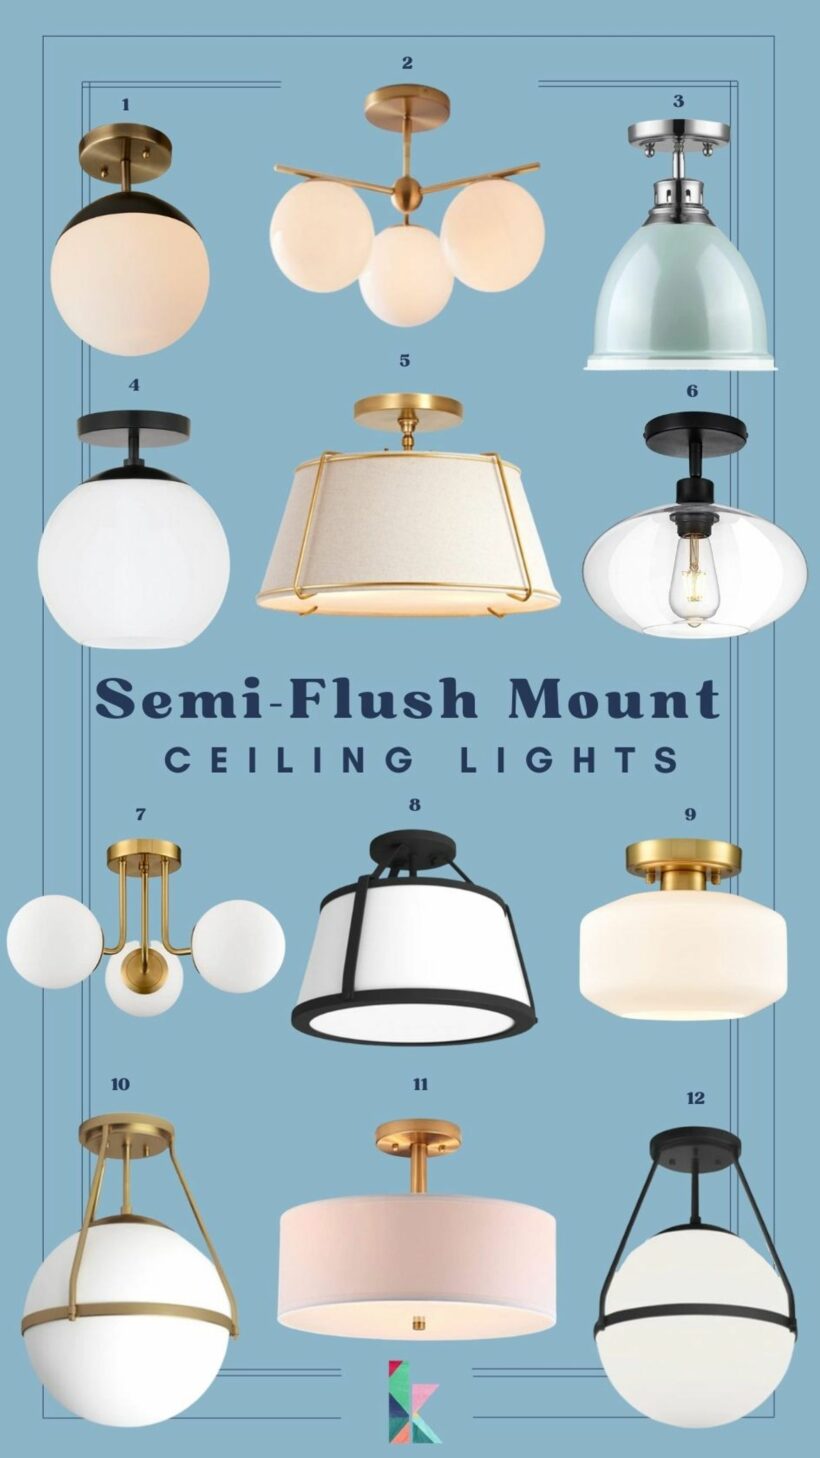 semi-flush mount ceiling lights